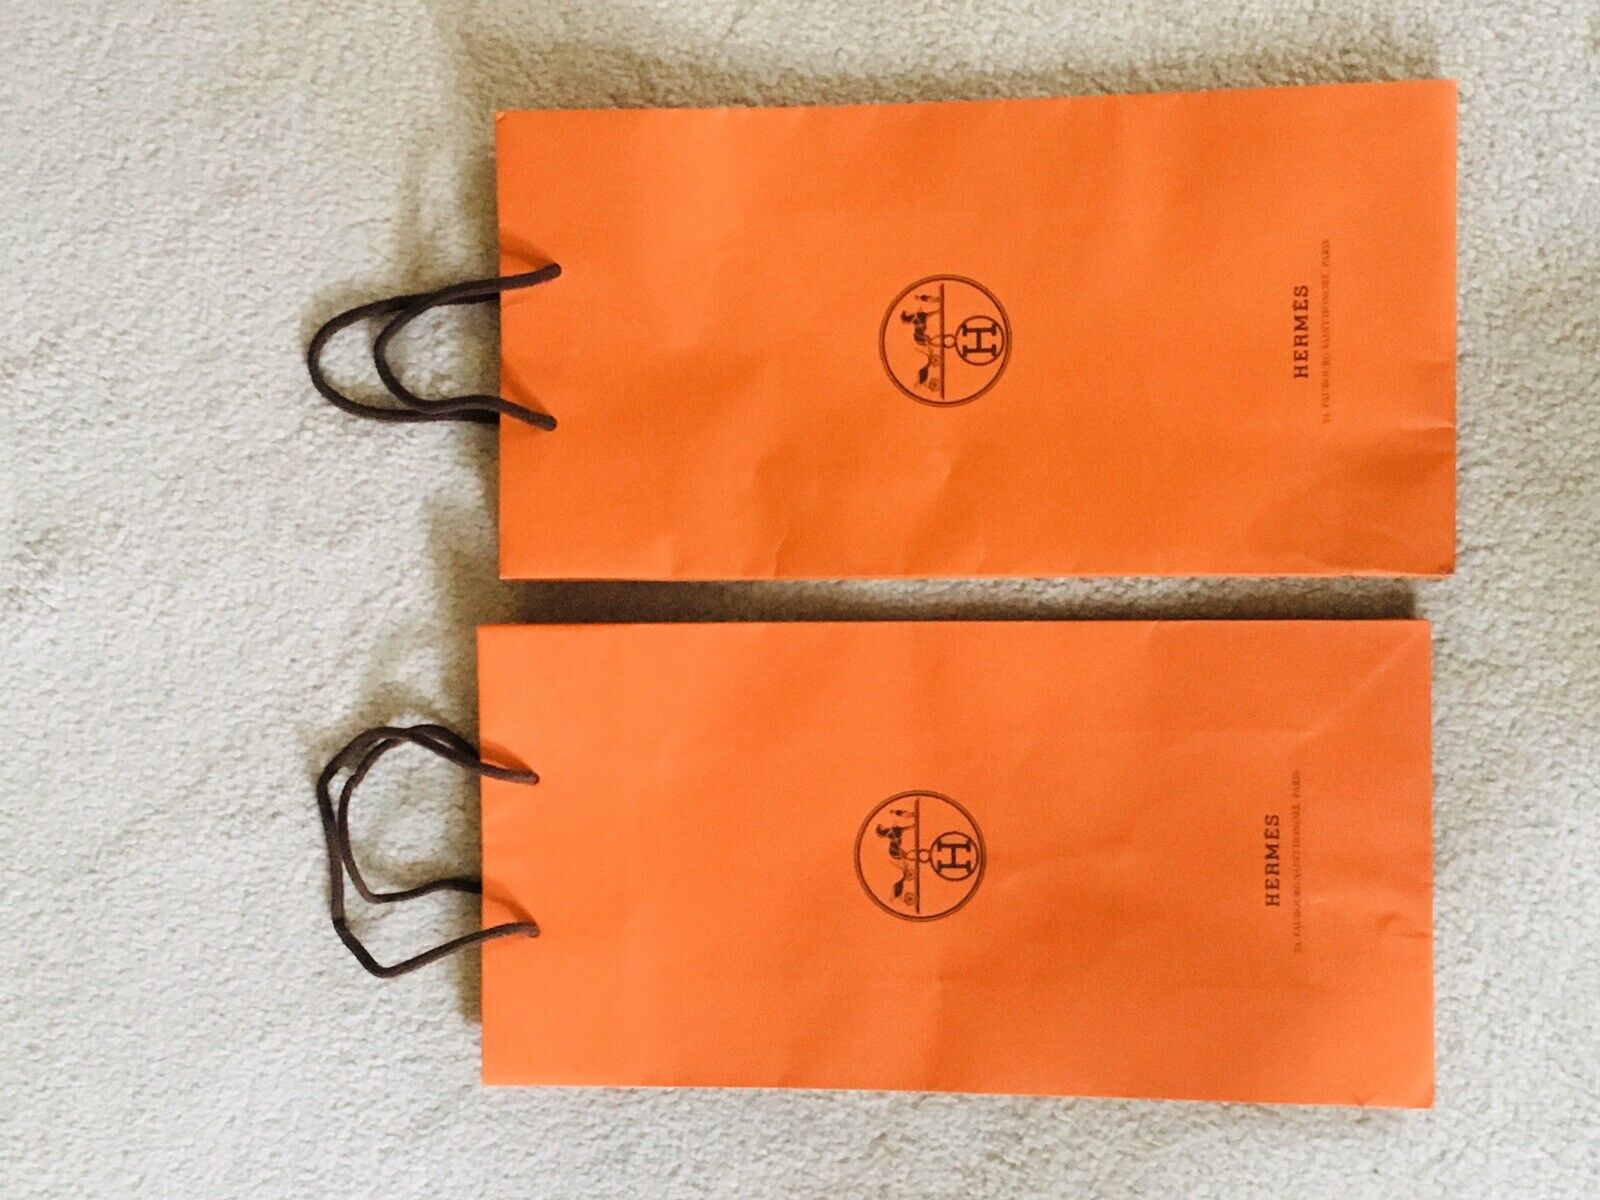 Hermes Empty Orange Shopping Gift Paper Bag Small （8.5×6×2.75）